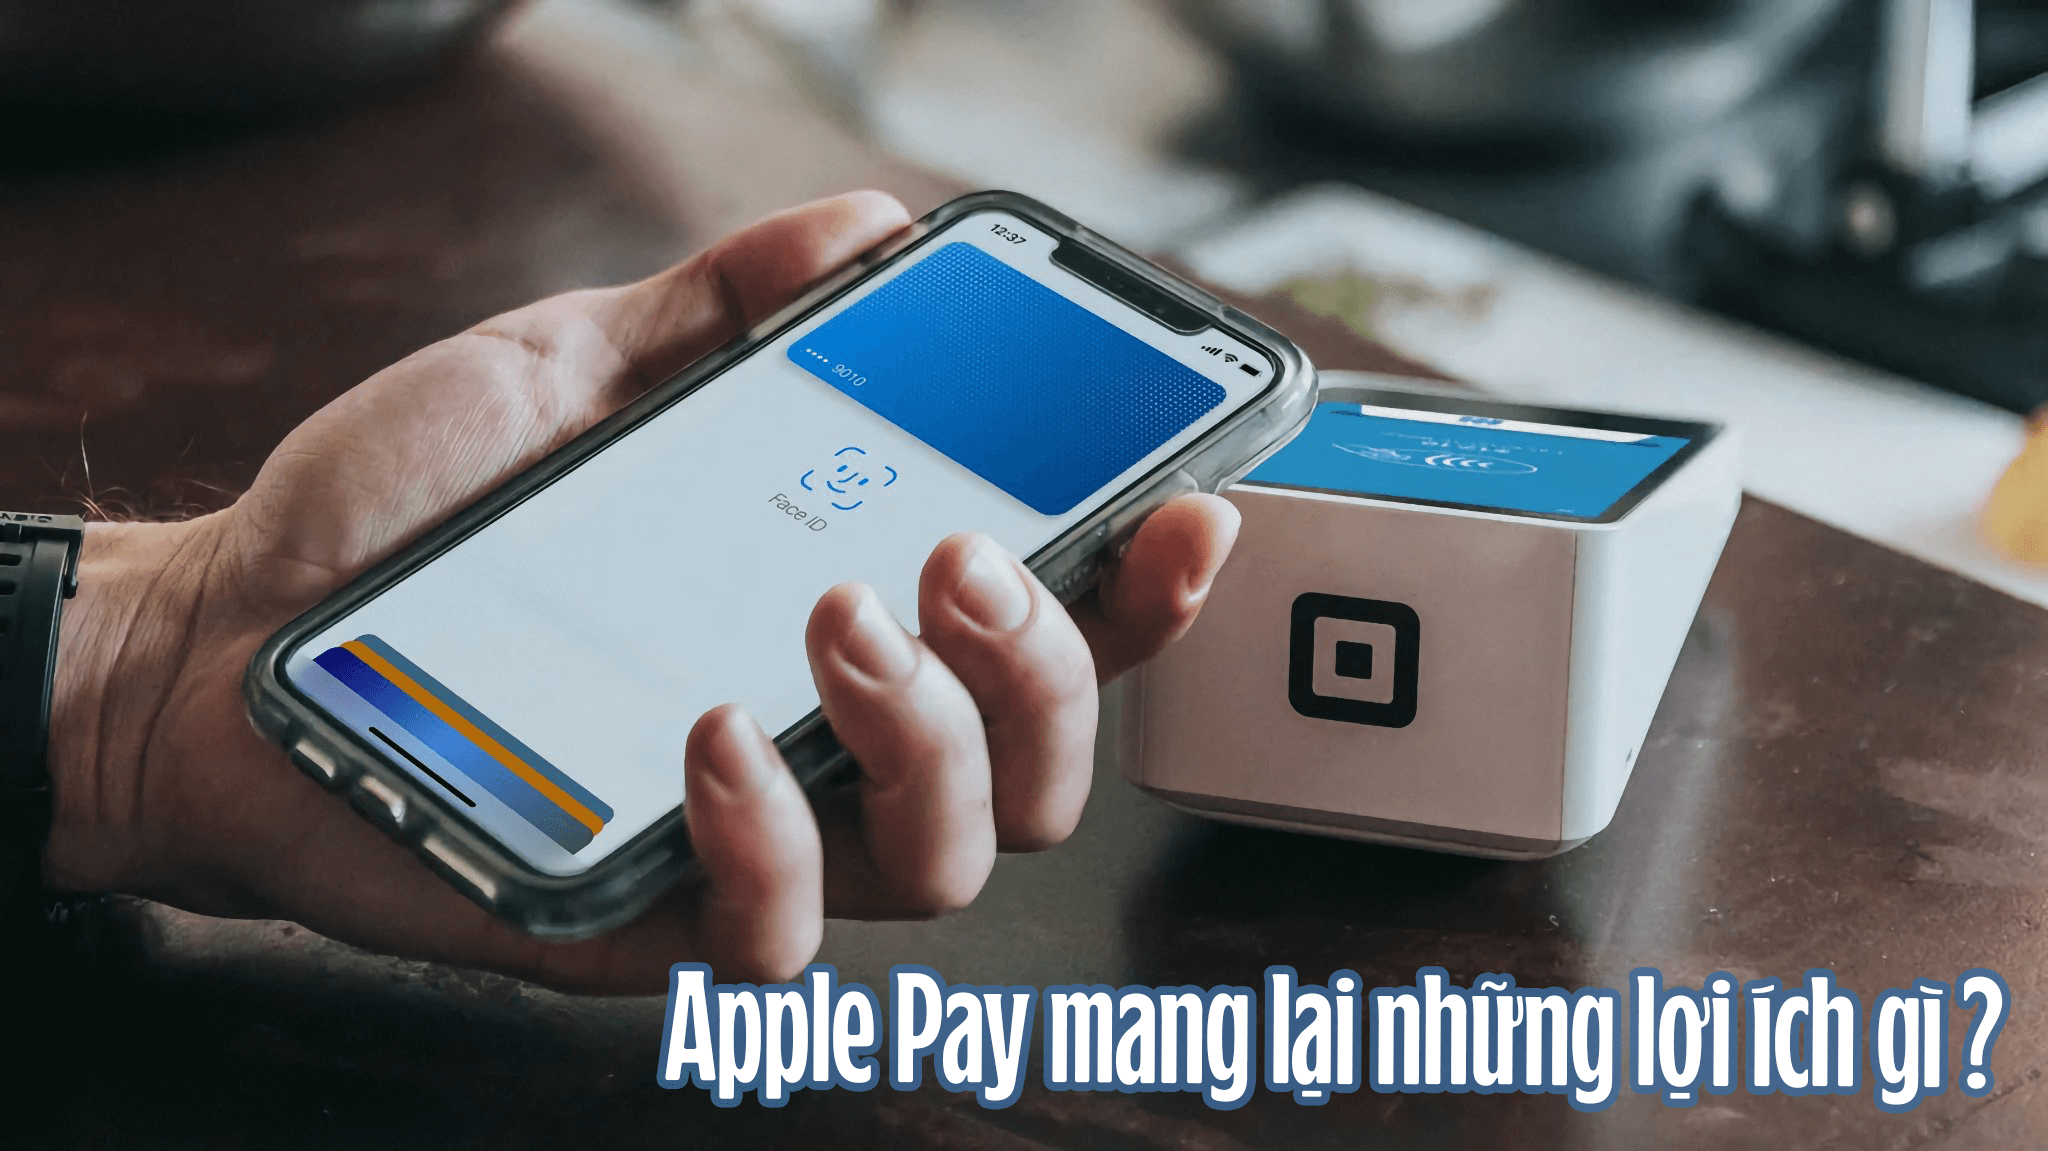 Apple Pay mang lại những lợi ích gì ?